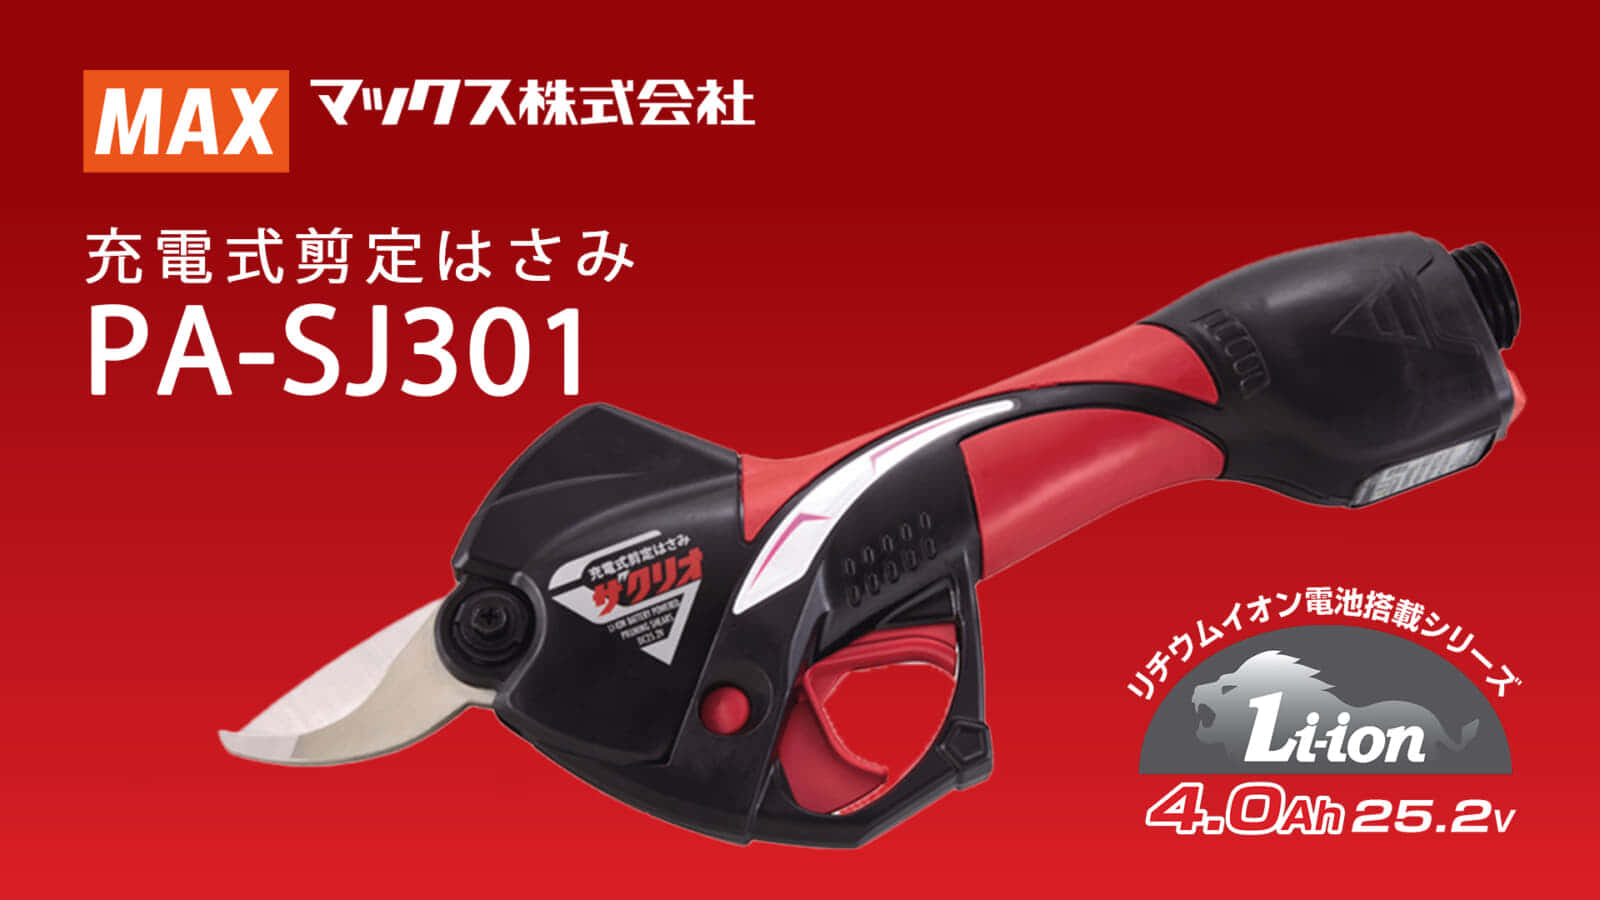 マックス PA-SJ301 充電式剪定はさみ、ザクリオ シリーズ最新モデル